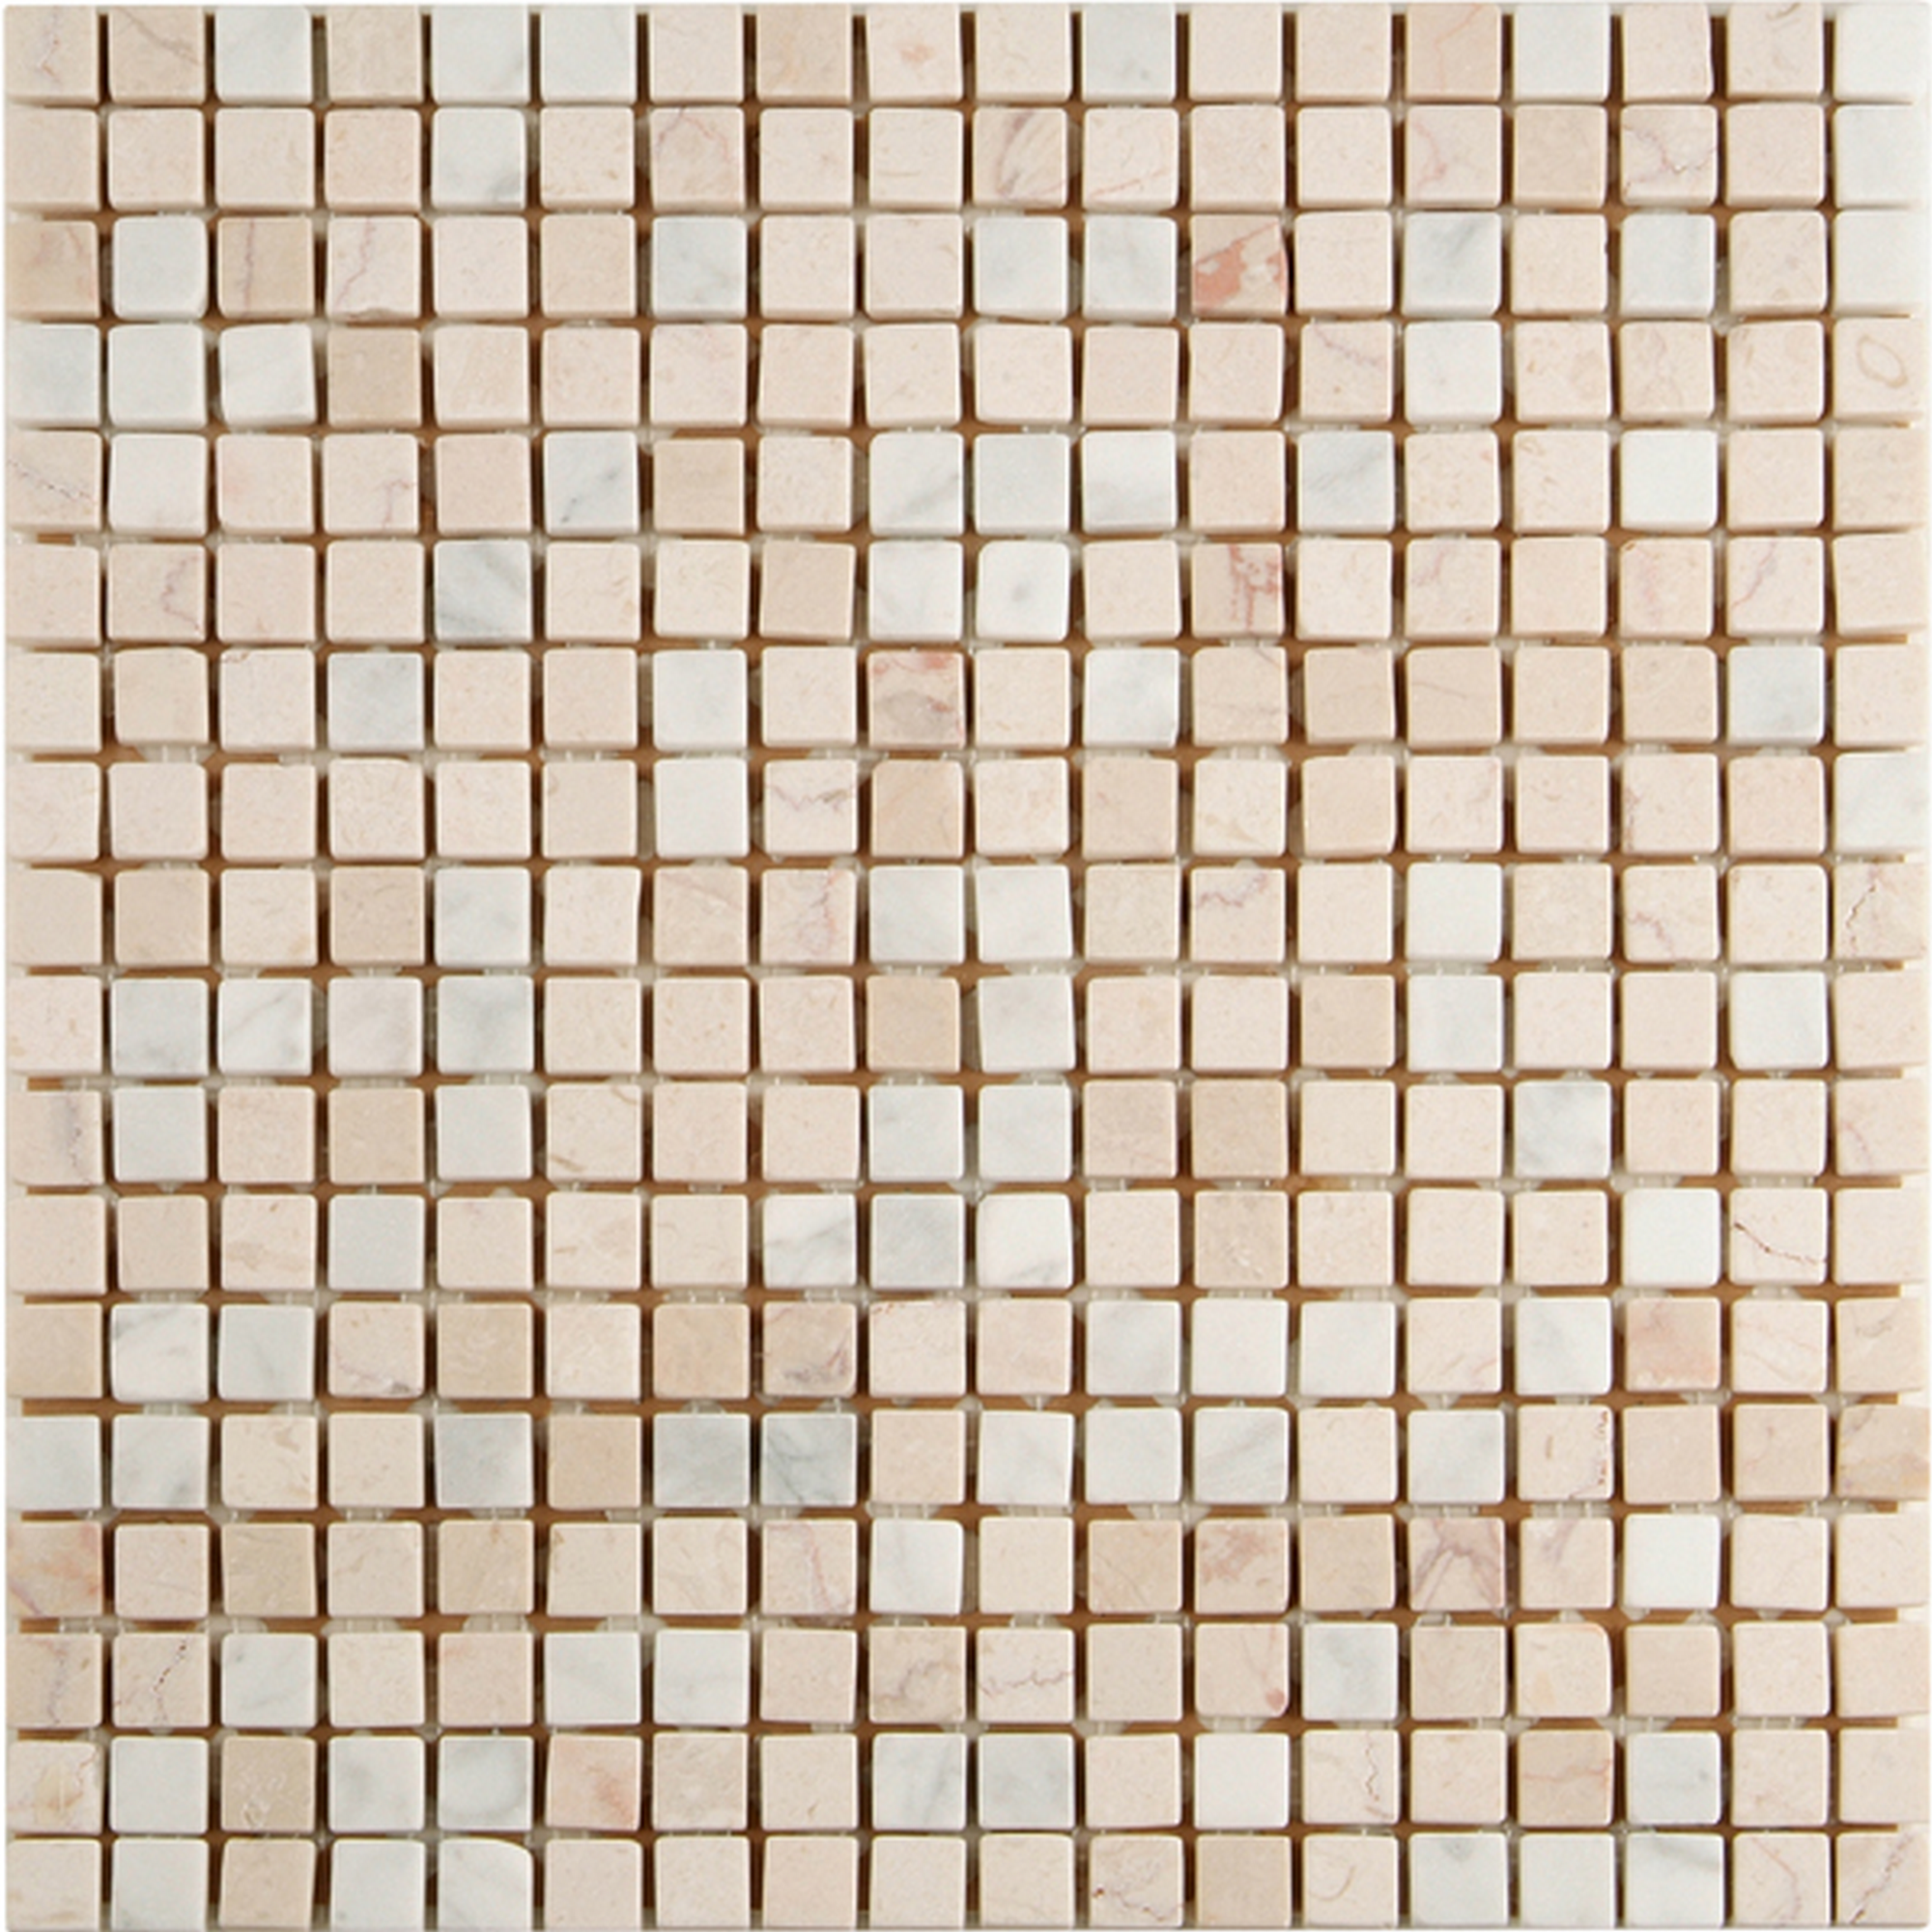 Mosaikfliese 'Travertin' Naturstein weiß/beige 30,5 x 30,5 cm + product picture